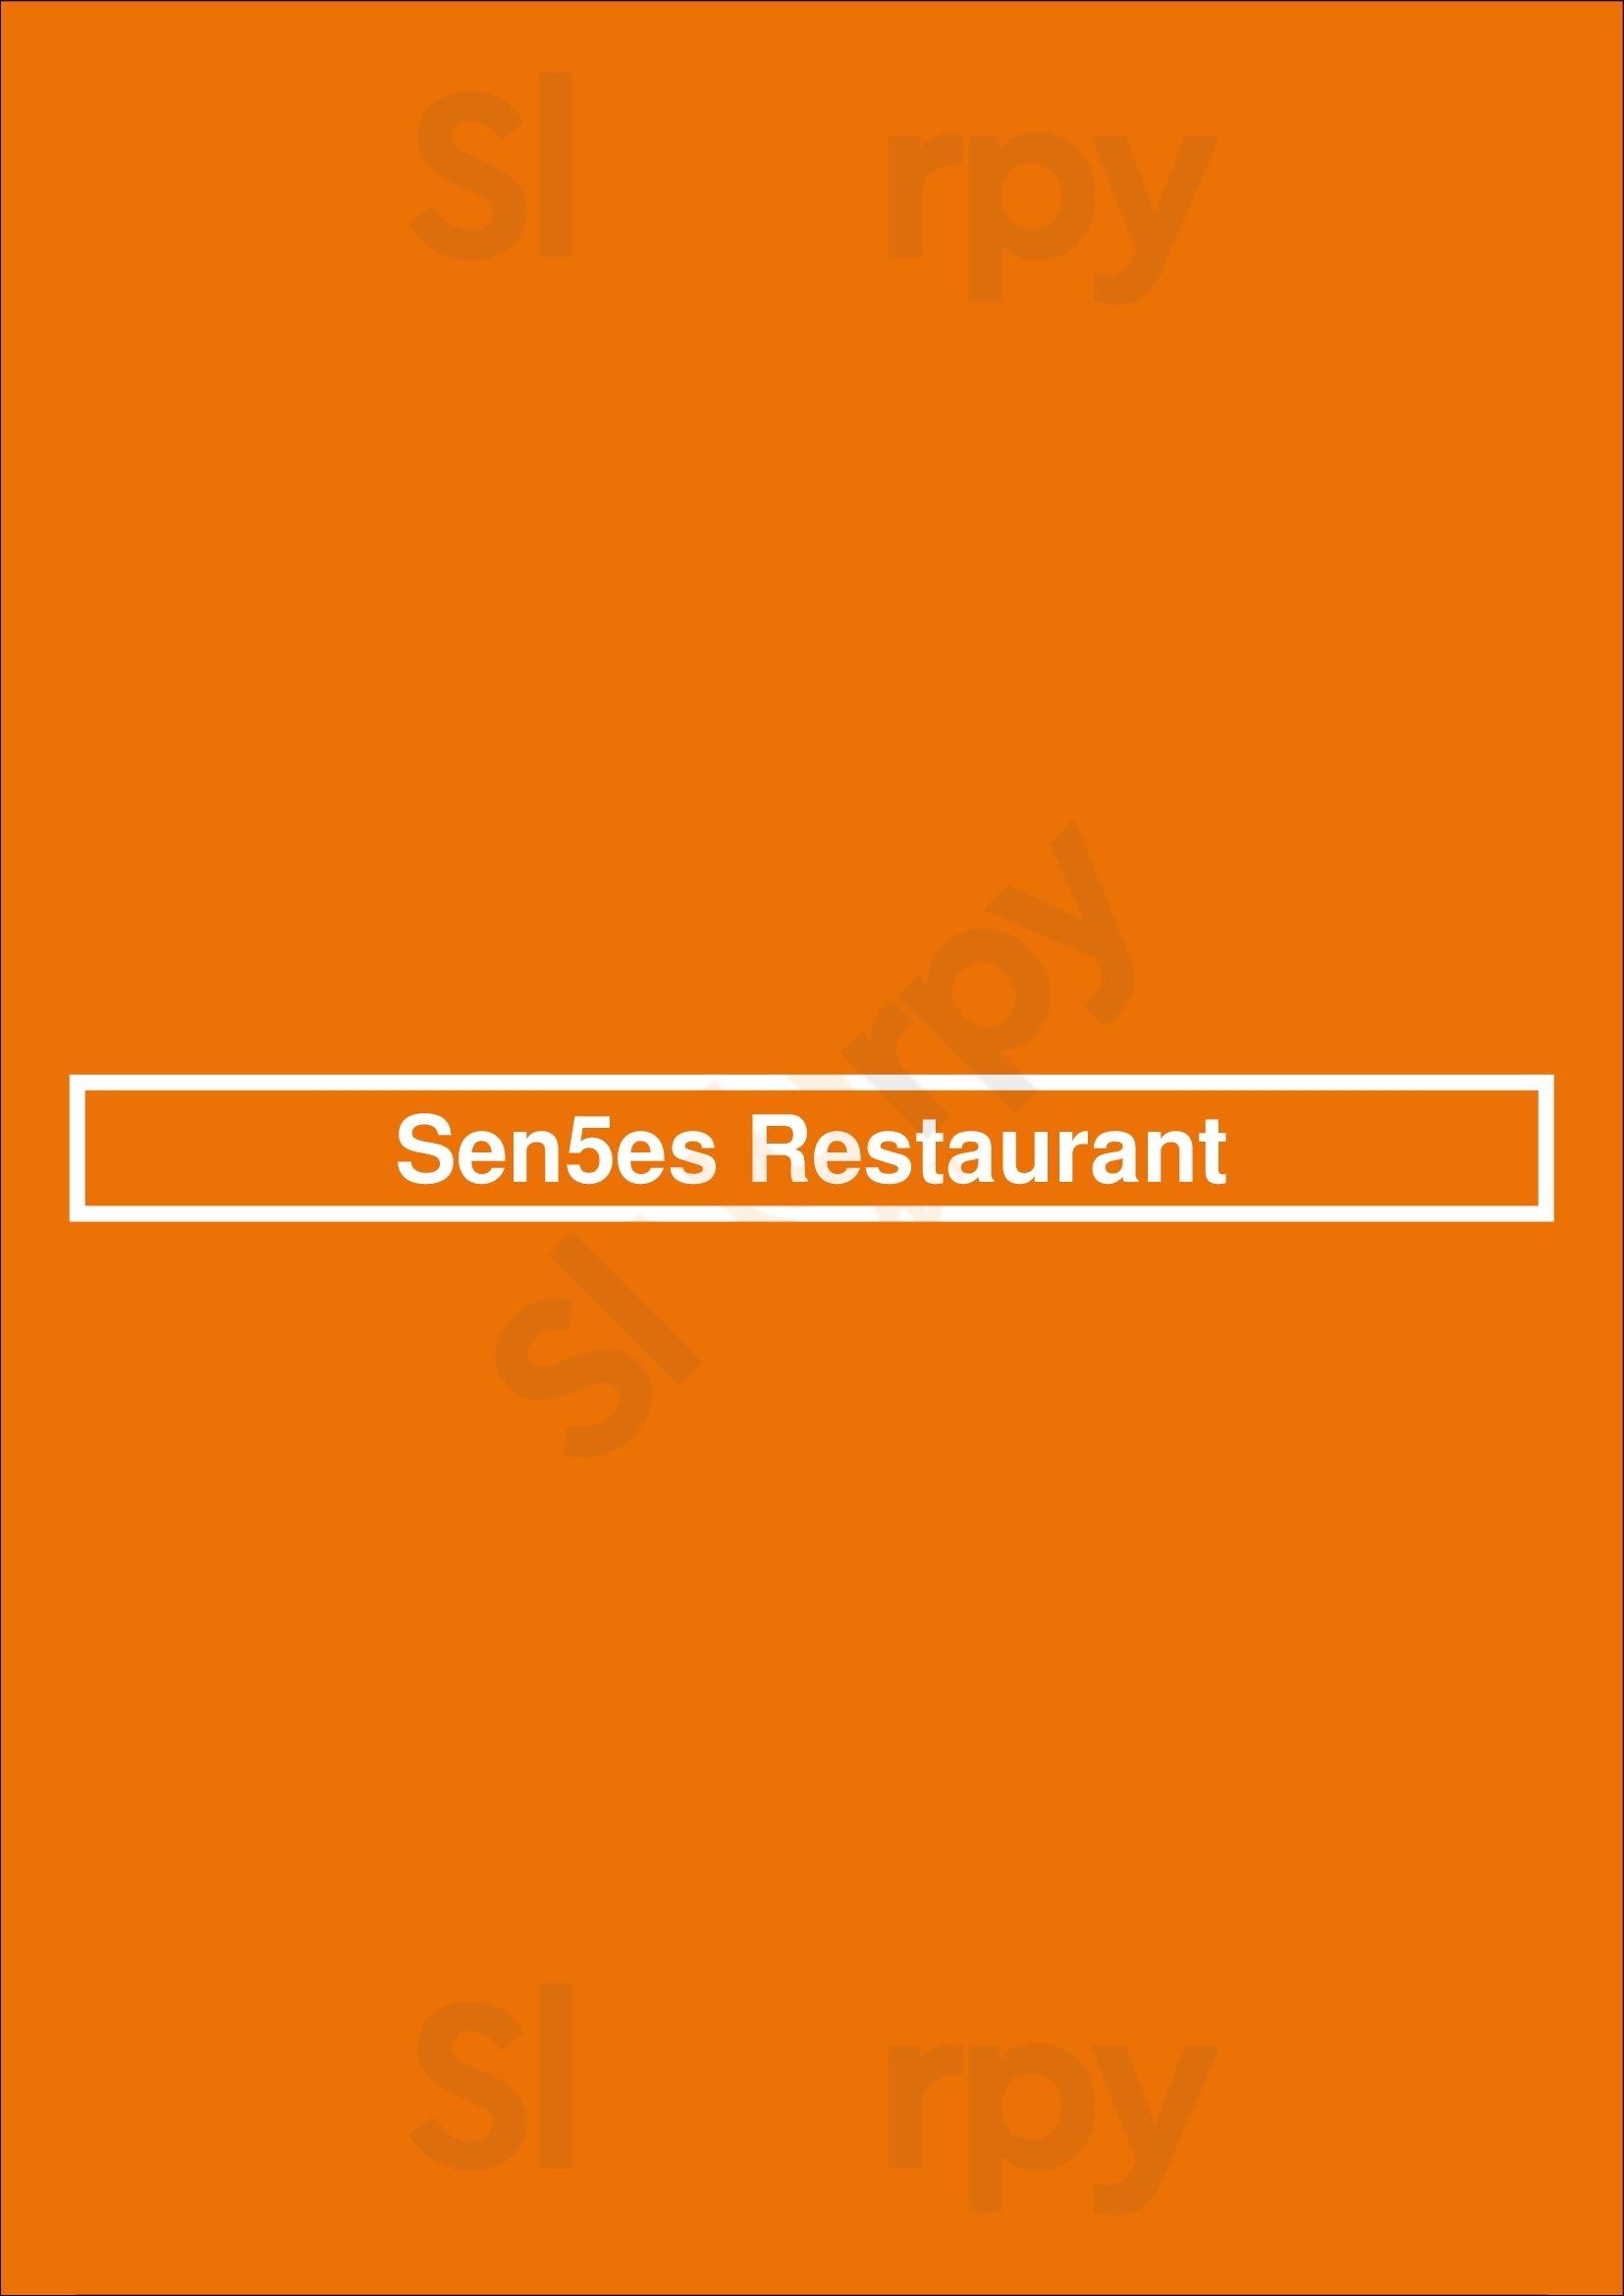 Sen5es Restaurant And Wine Bar Perth Menu - 1